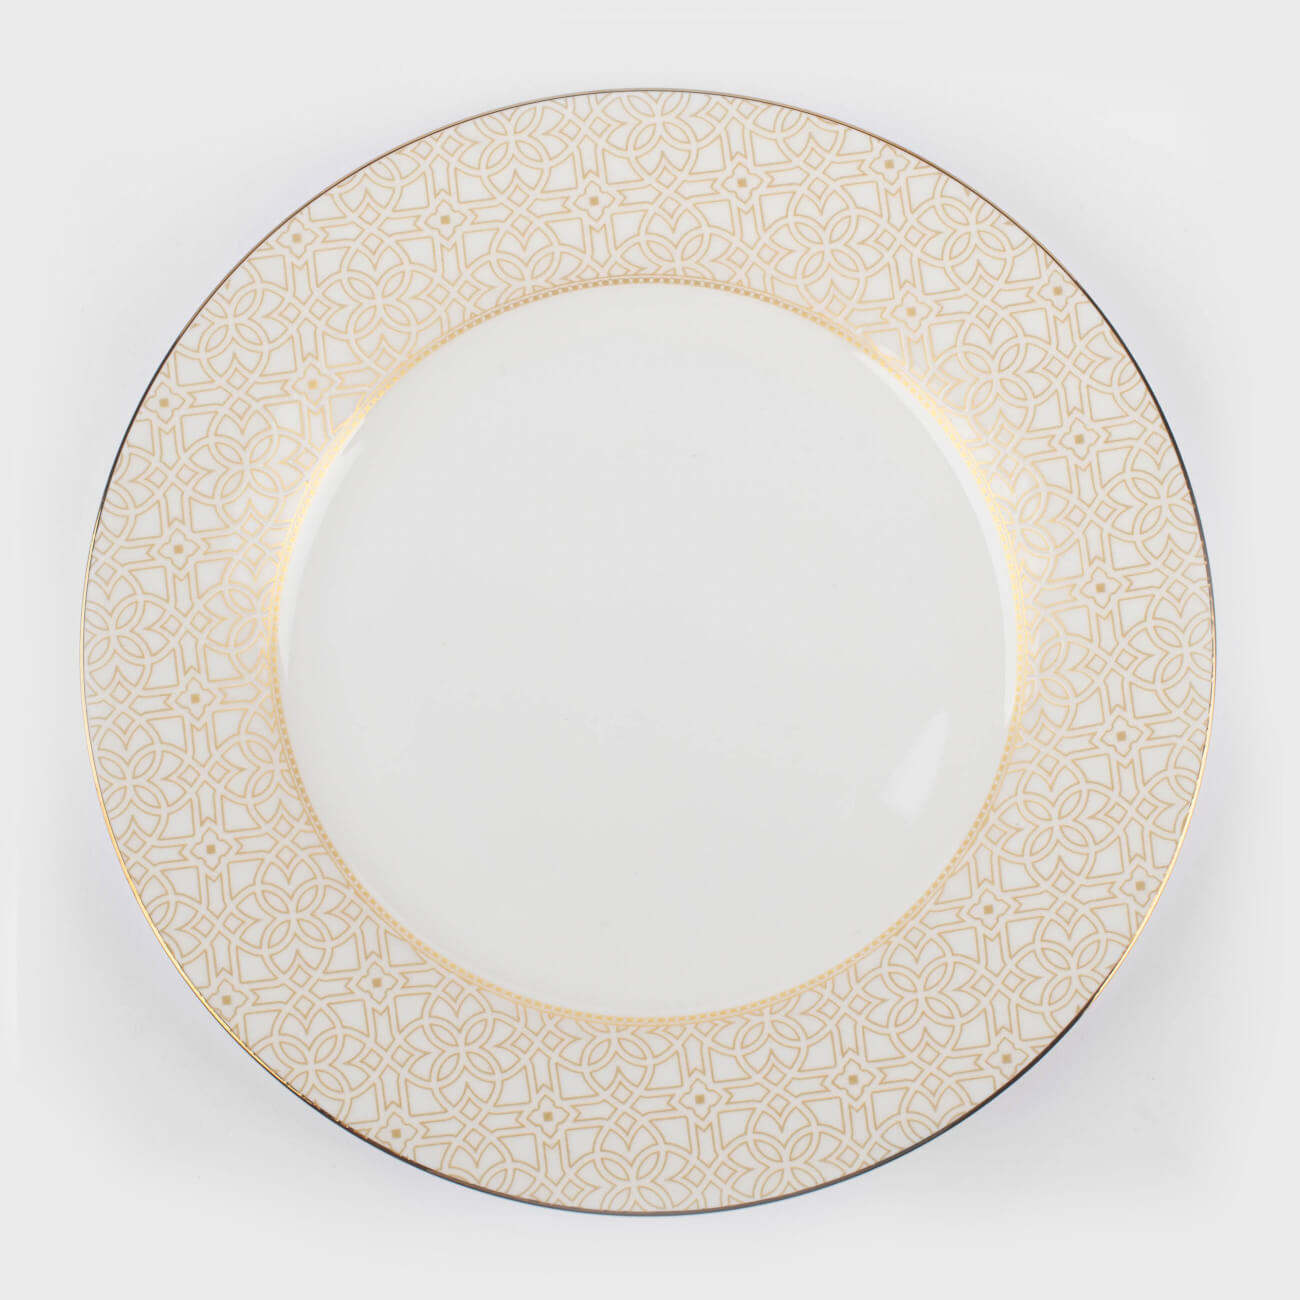 Тарелка десертная, 19 см, фарфор F, с золотистым кантом, Орнамент, Liberty тарелка десертная tudor royal sutton 20 см